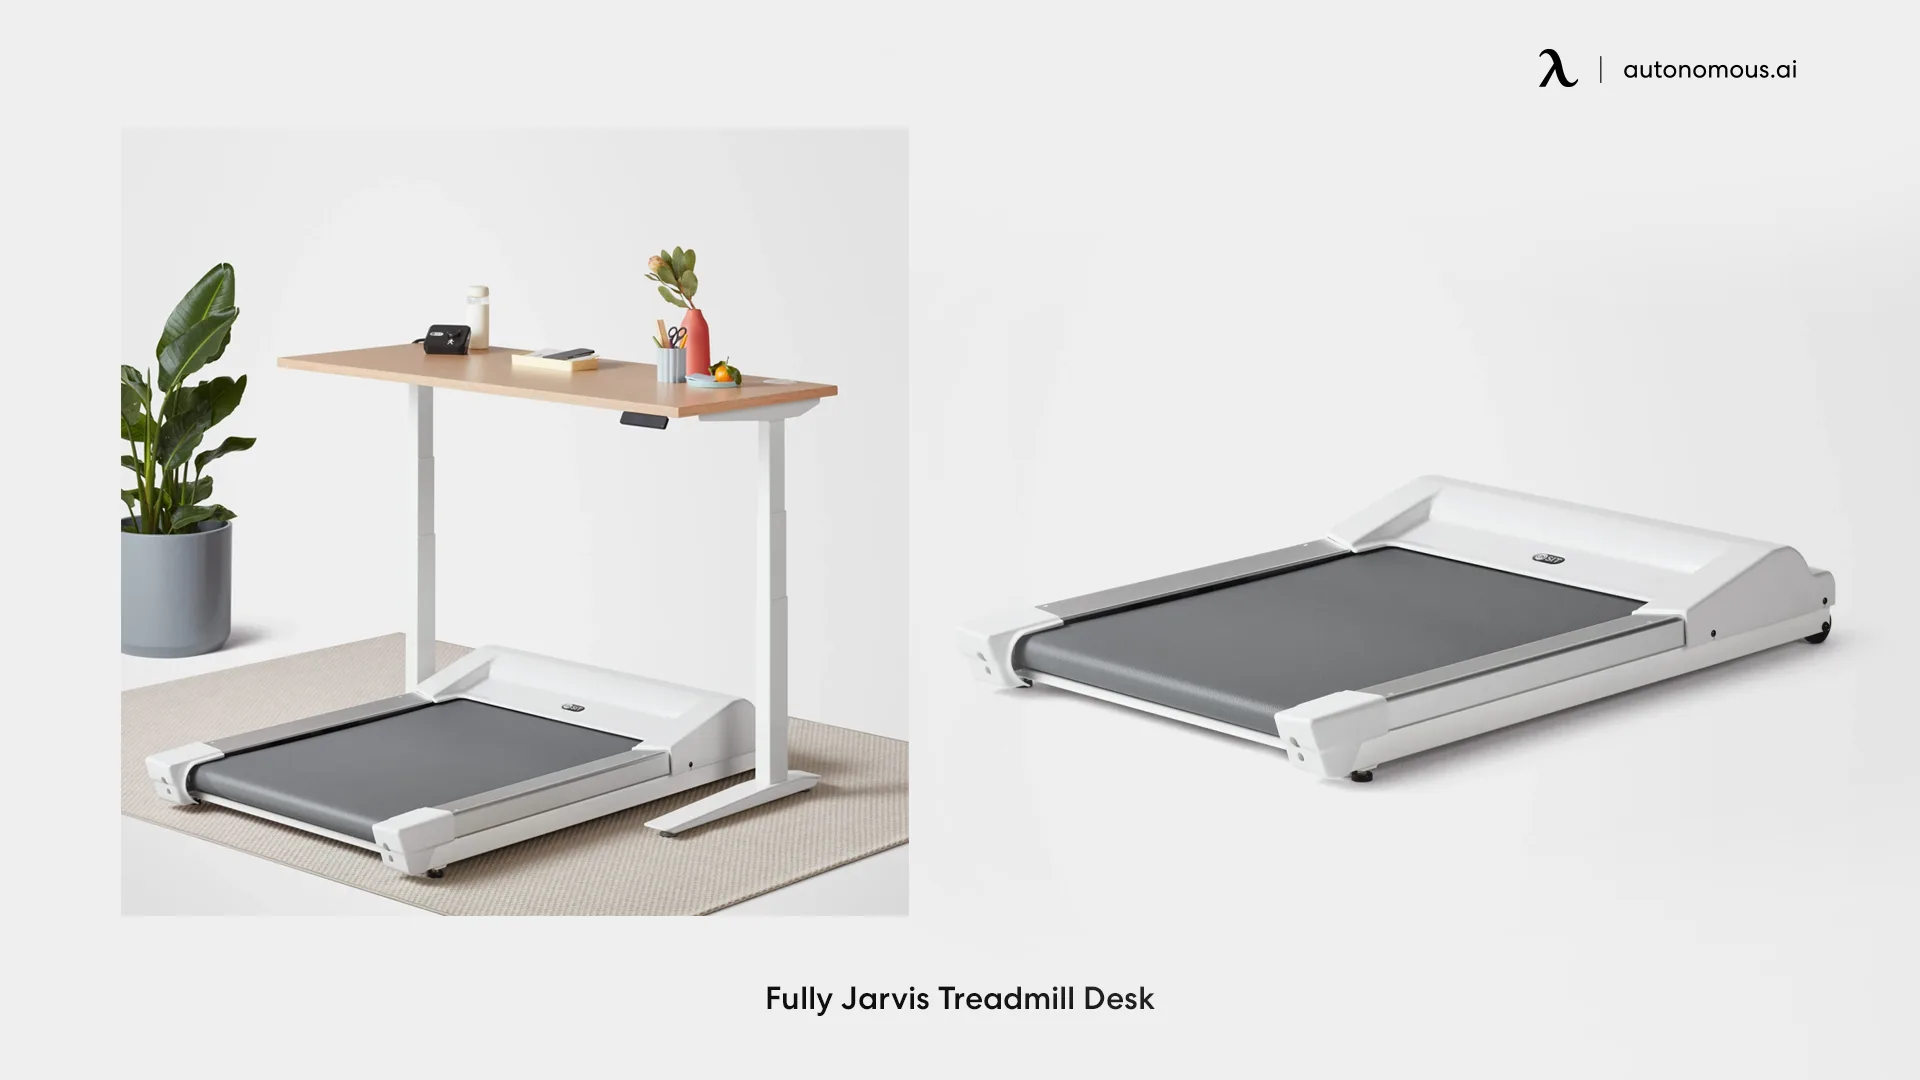 Fully Jarvis Treadmill Desk